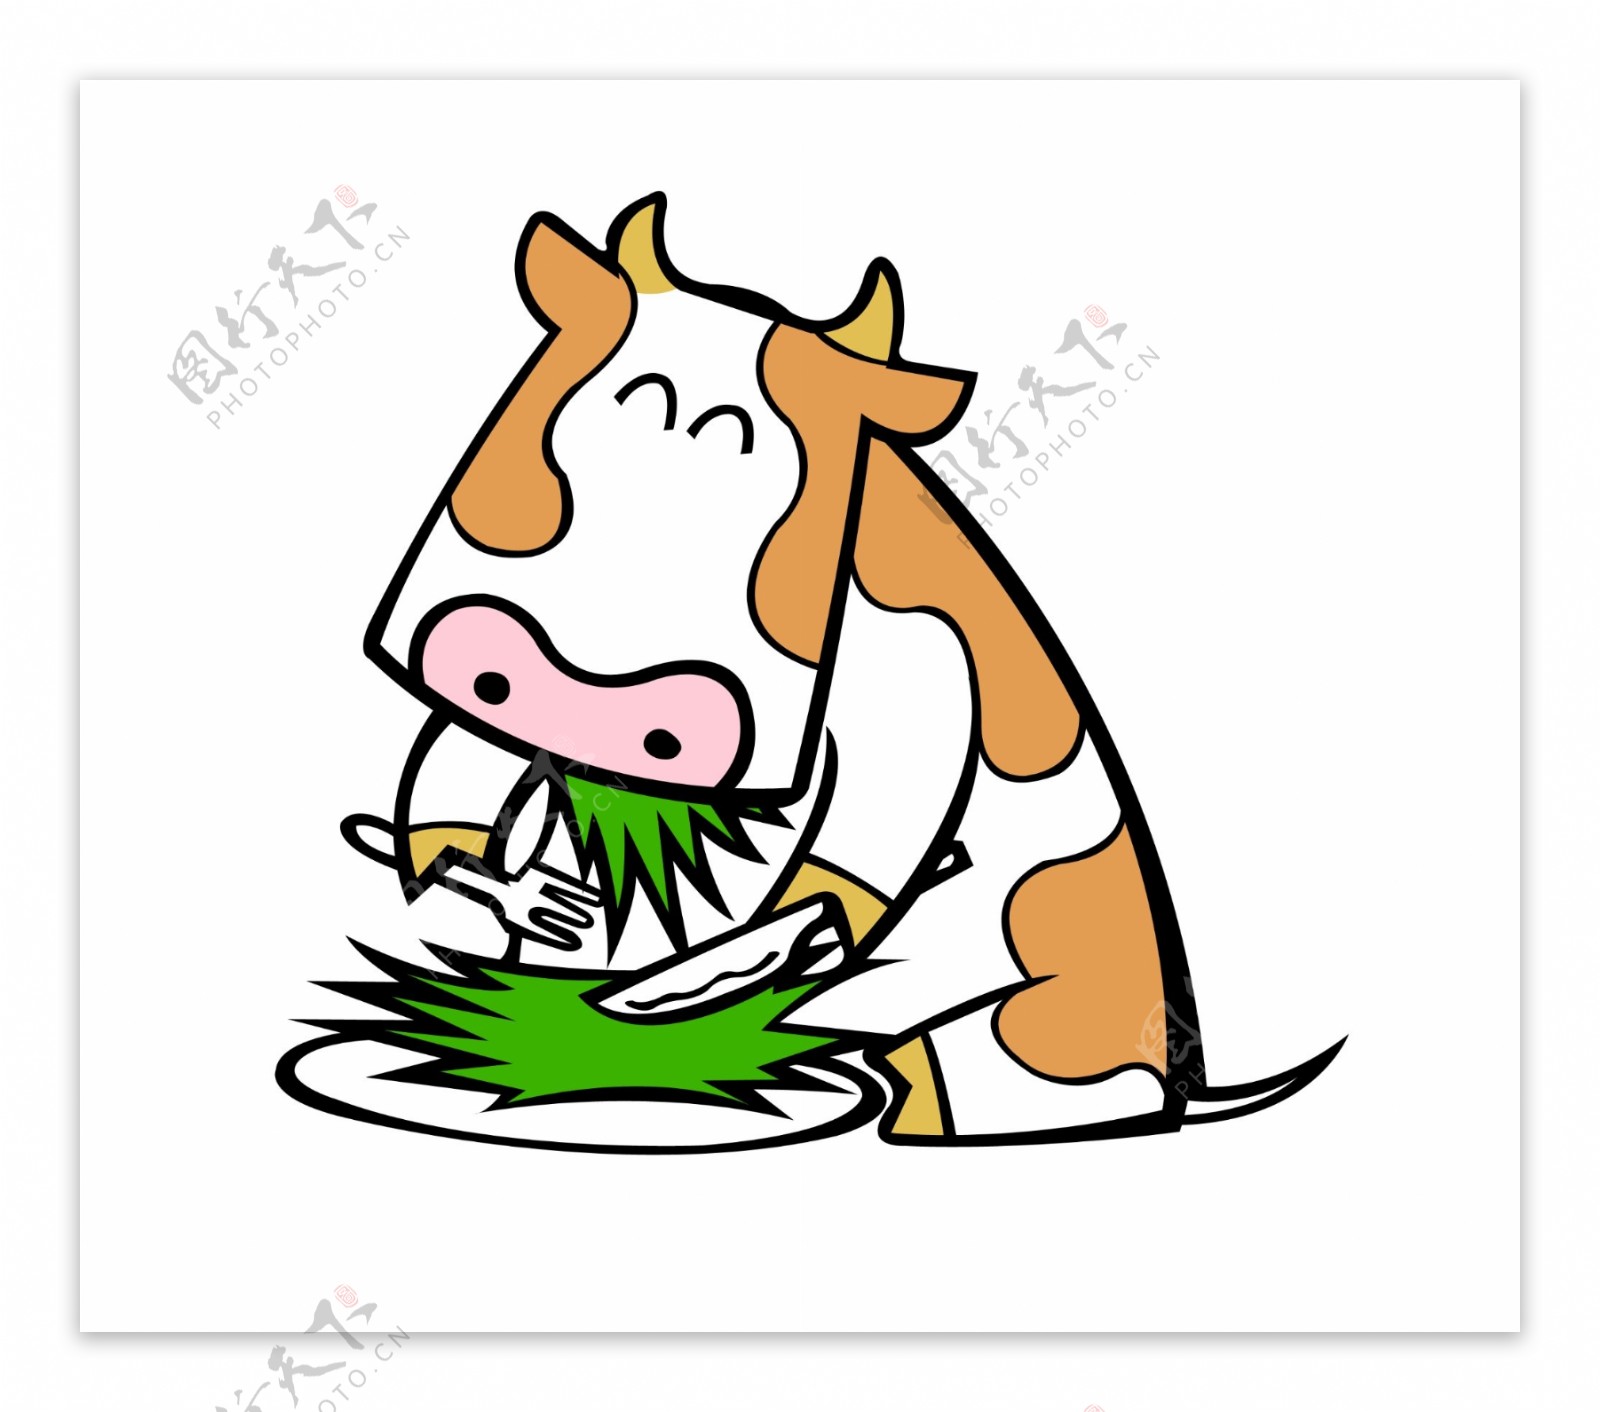 牛吃草图片